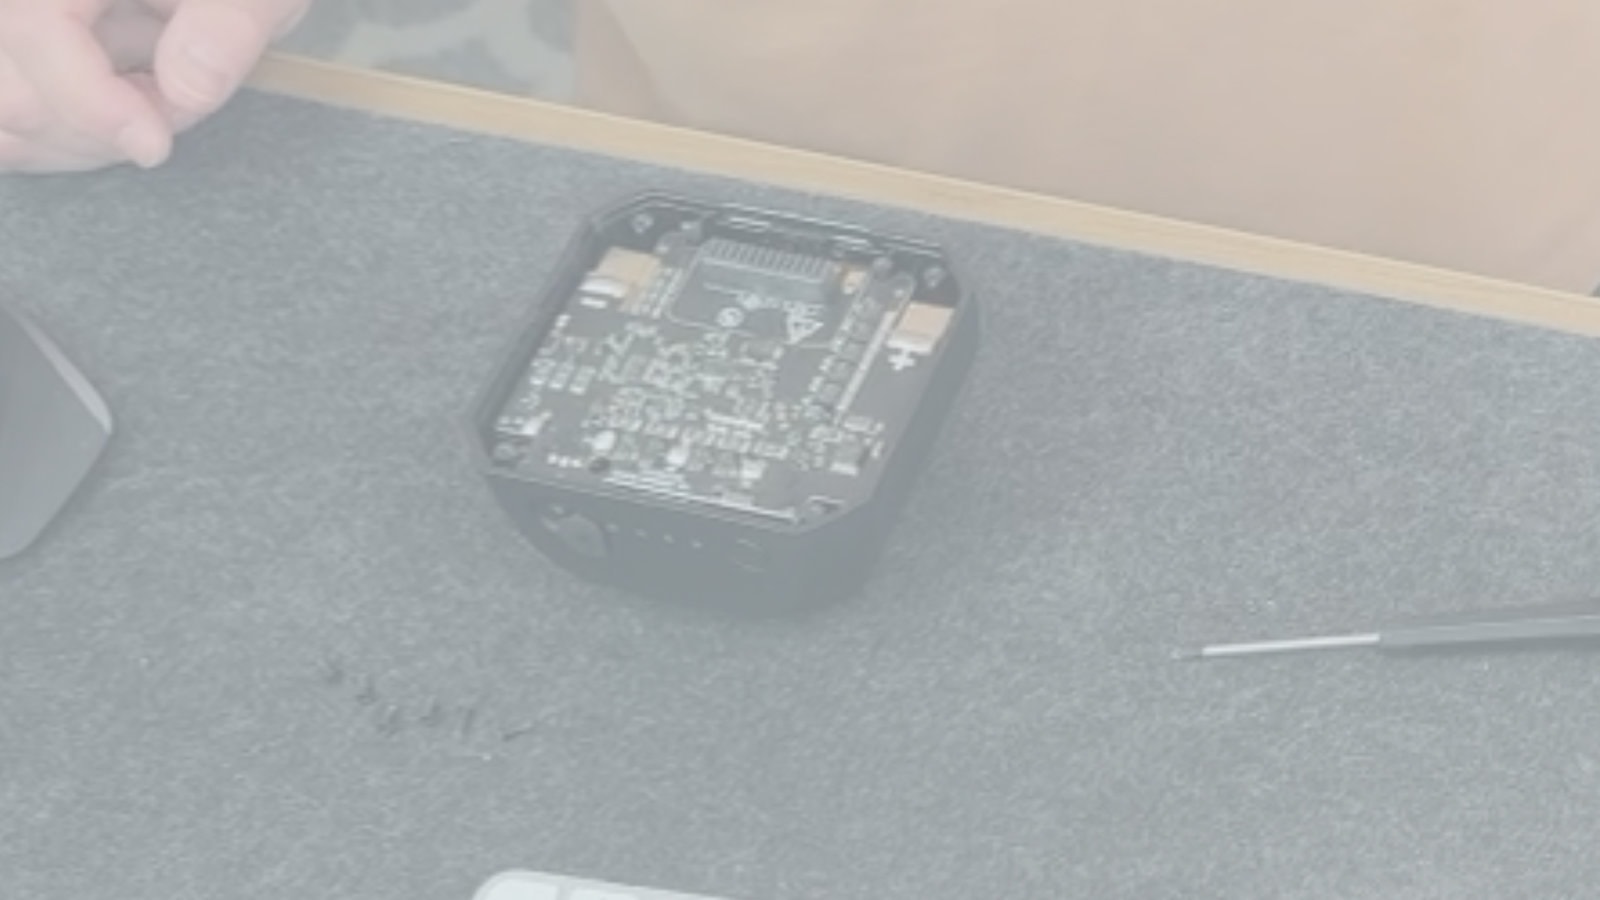 Blurred image of computer hardware on desk.